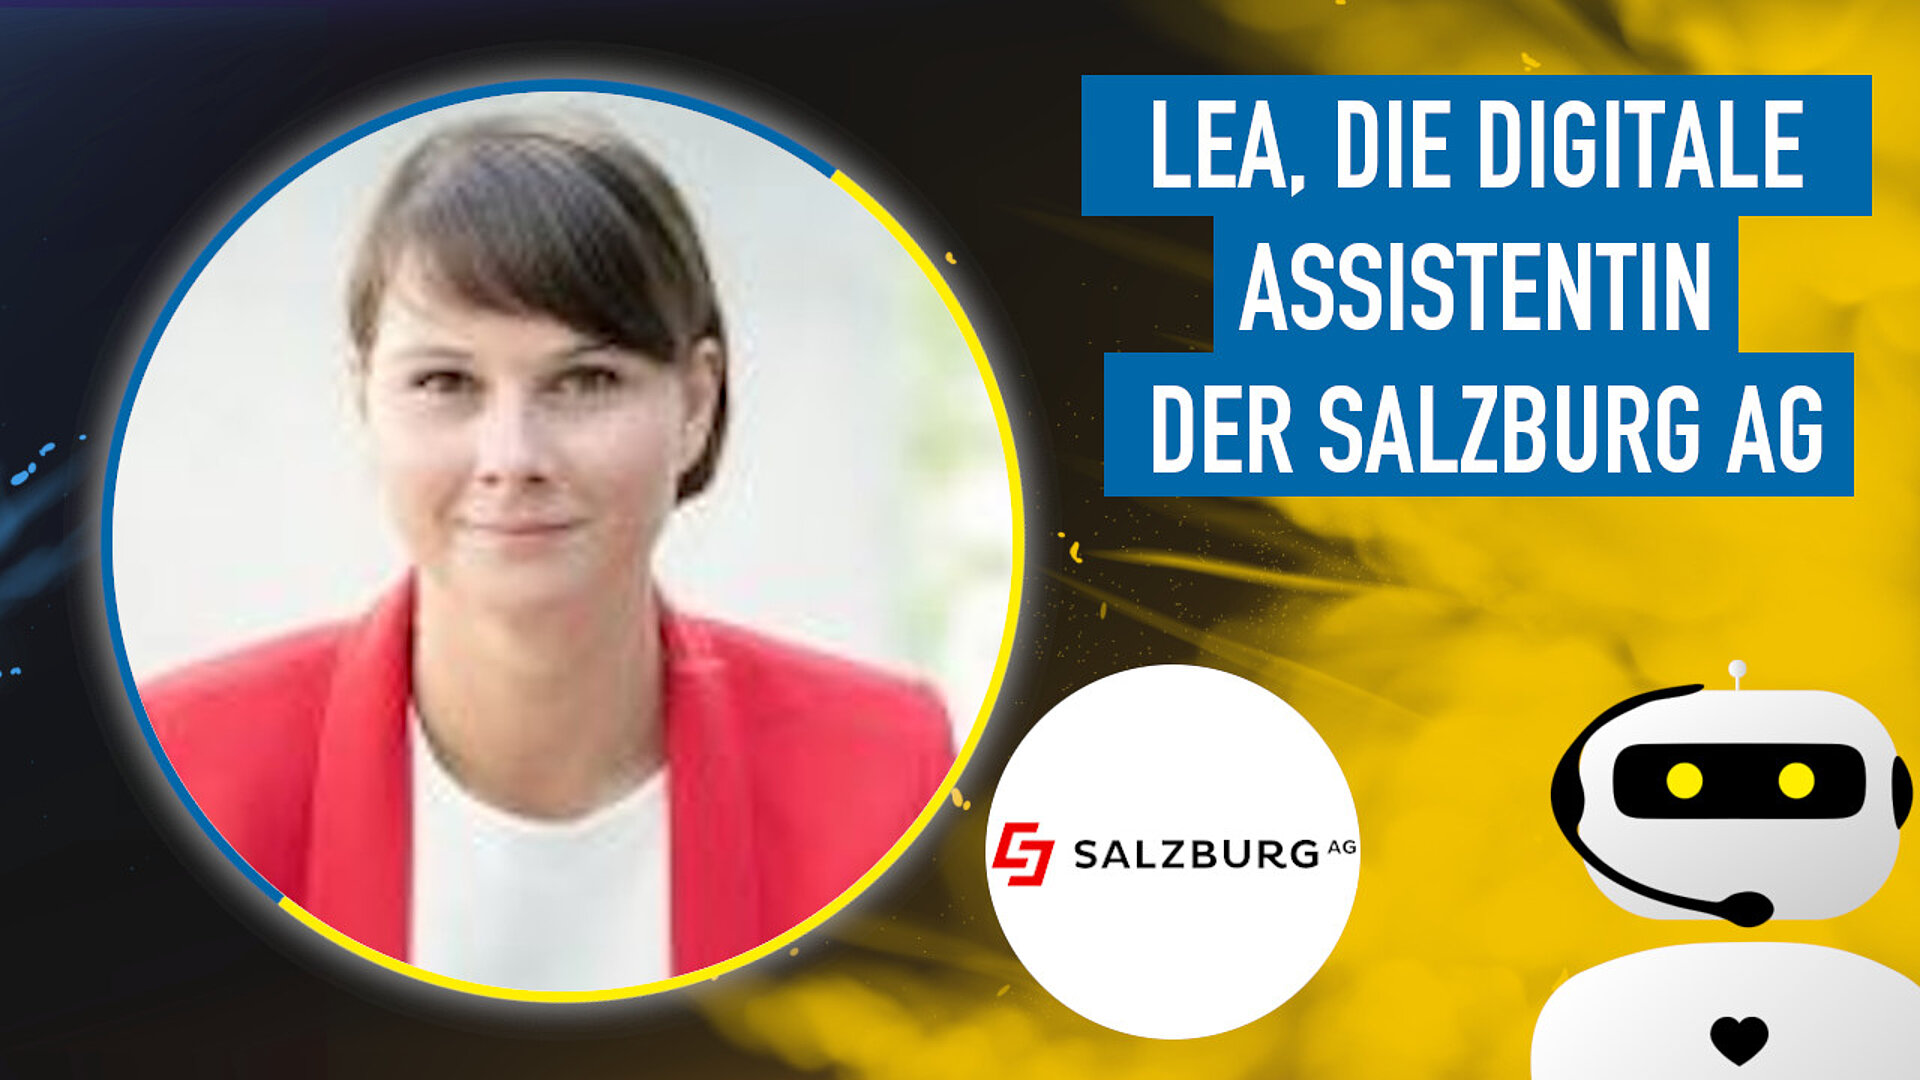 LEA, die digitale Assistentin der Salzburg AG: Einblick in die Projektumsetzung und Integration von Vertriebsprozessen